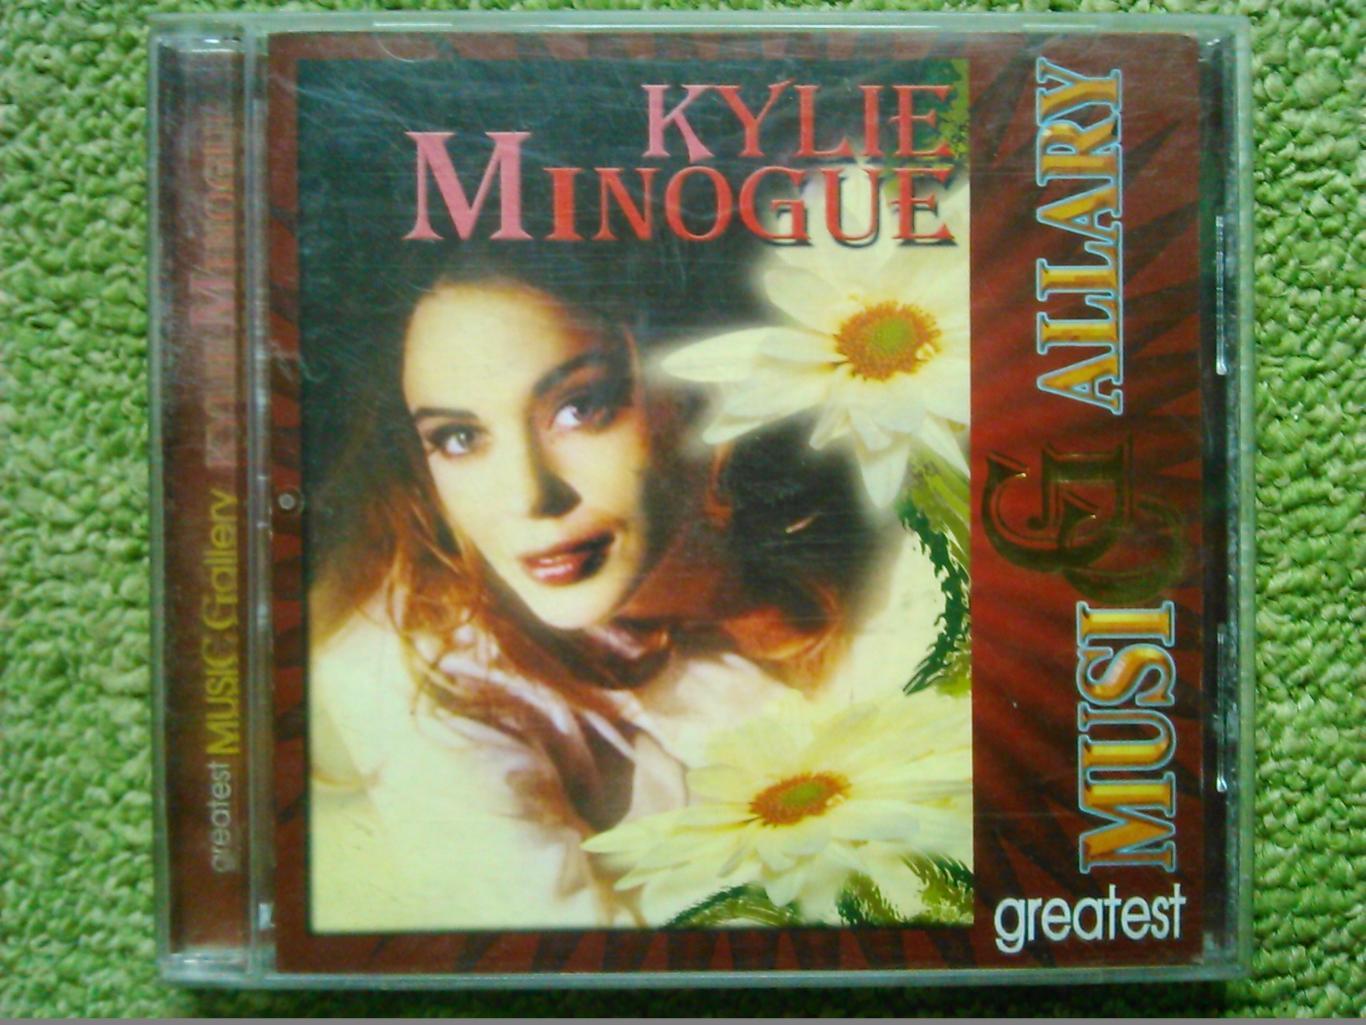 Audio CD Kylie MINOGUE. Оптом скидки до 49%!